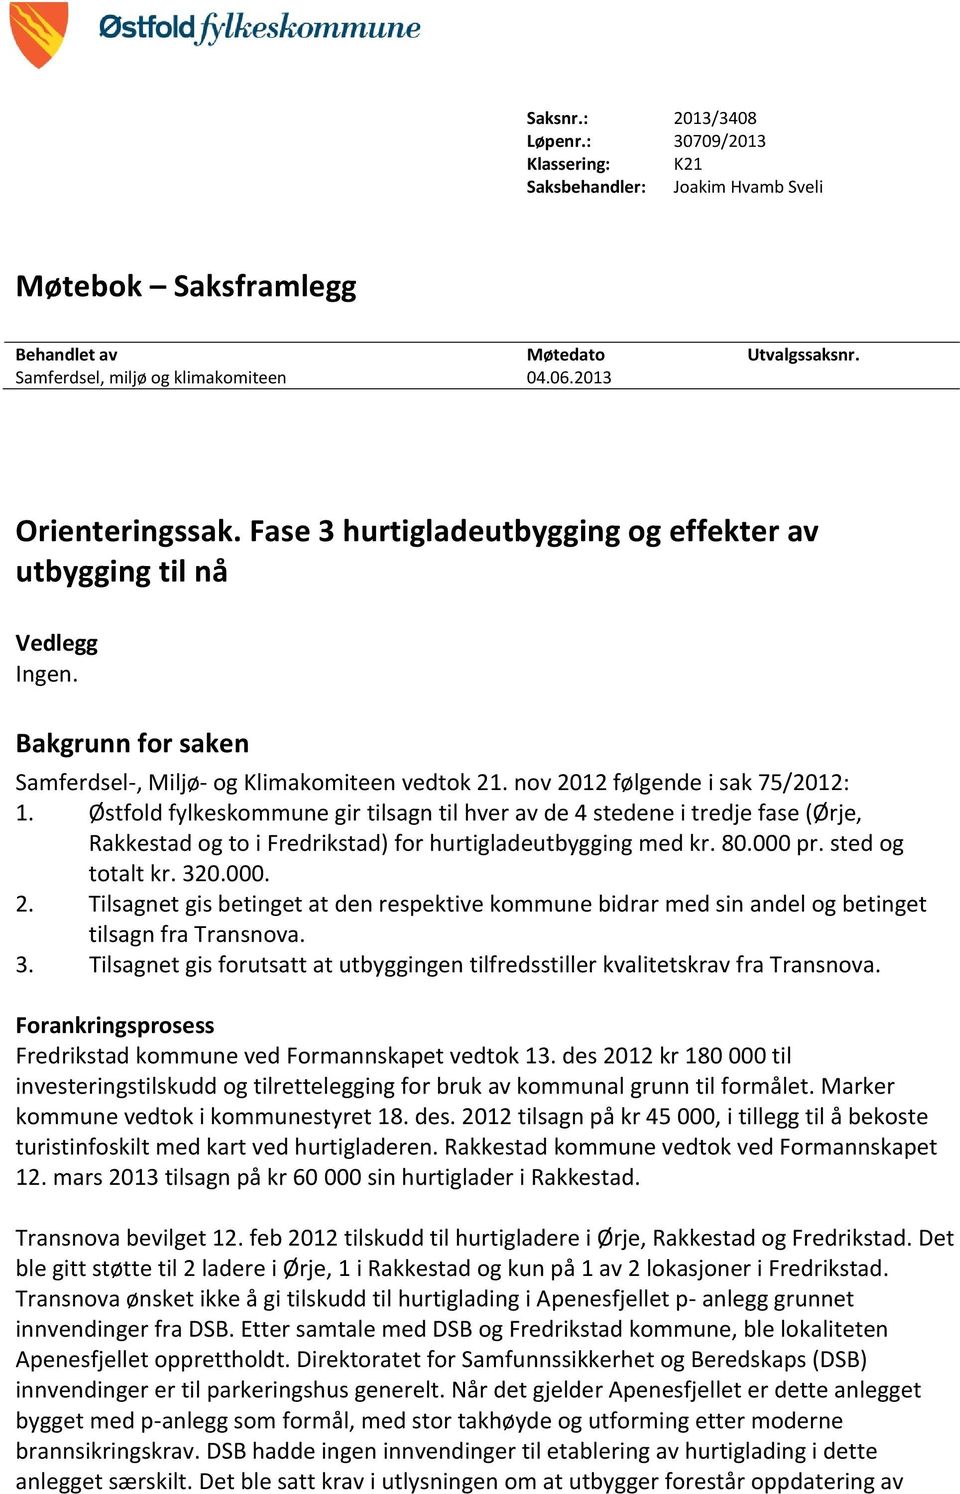 Østfold fylkeskommune gir tilsagn til hver av de 4 stedene i tredje fase (Ørje, Rakkestad og to i Fredrikstad) for hurtigladeutbygging med kr. 80.000 pr. sted og totalt kr. 320.000. 2.